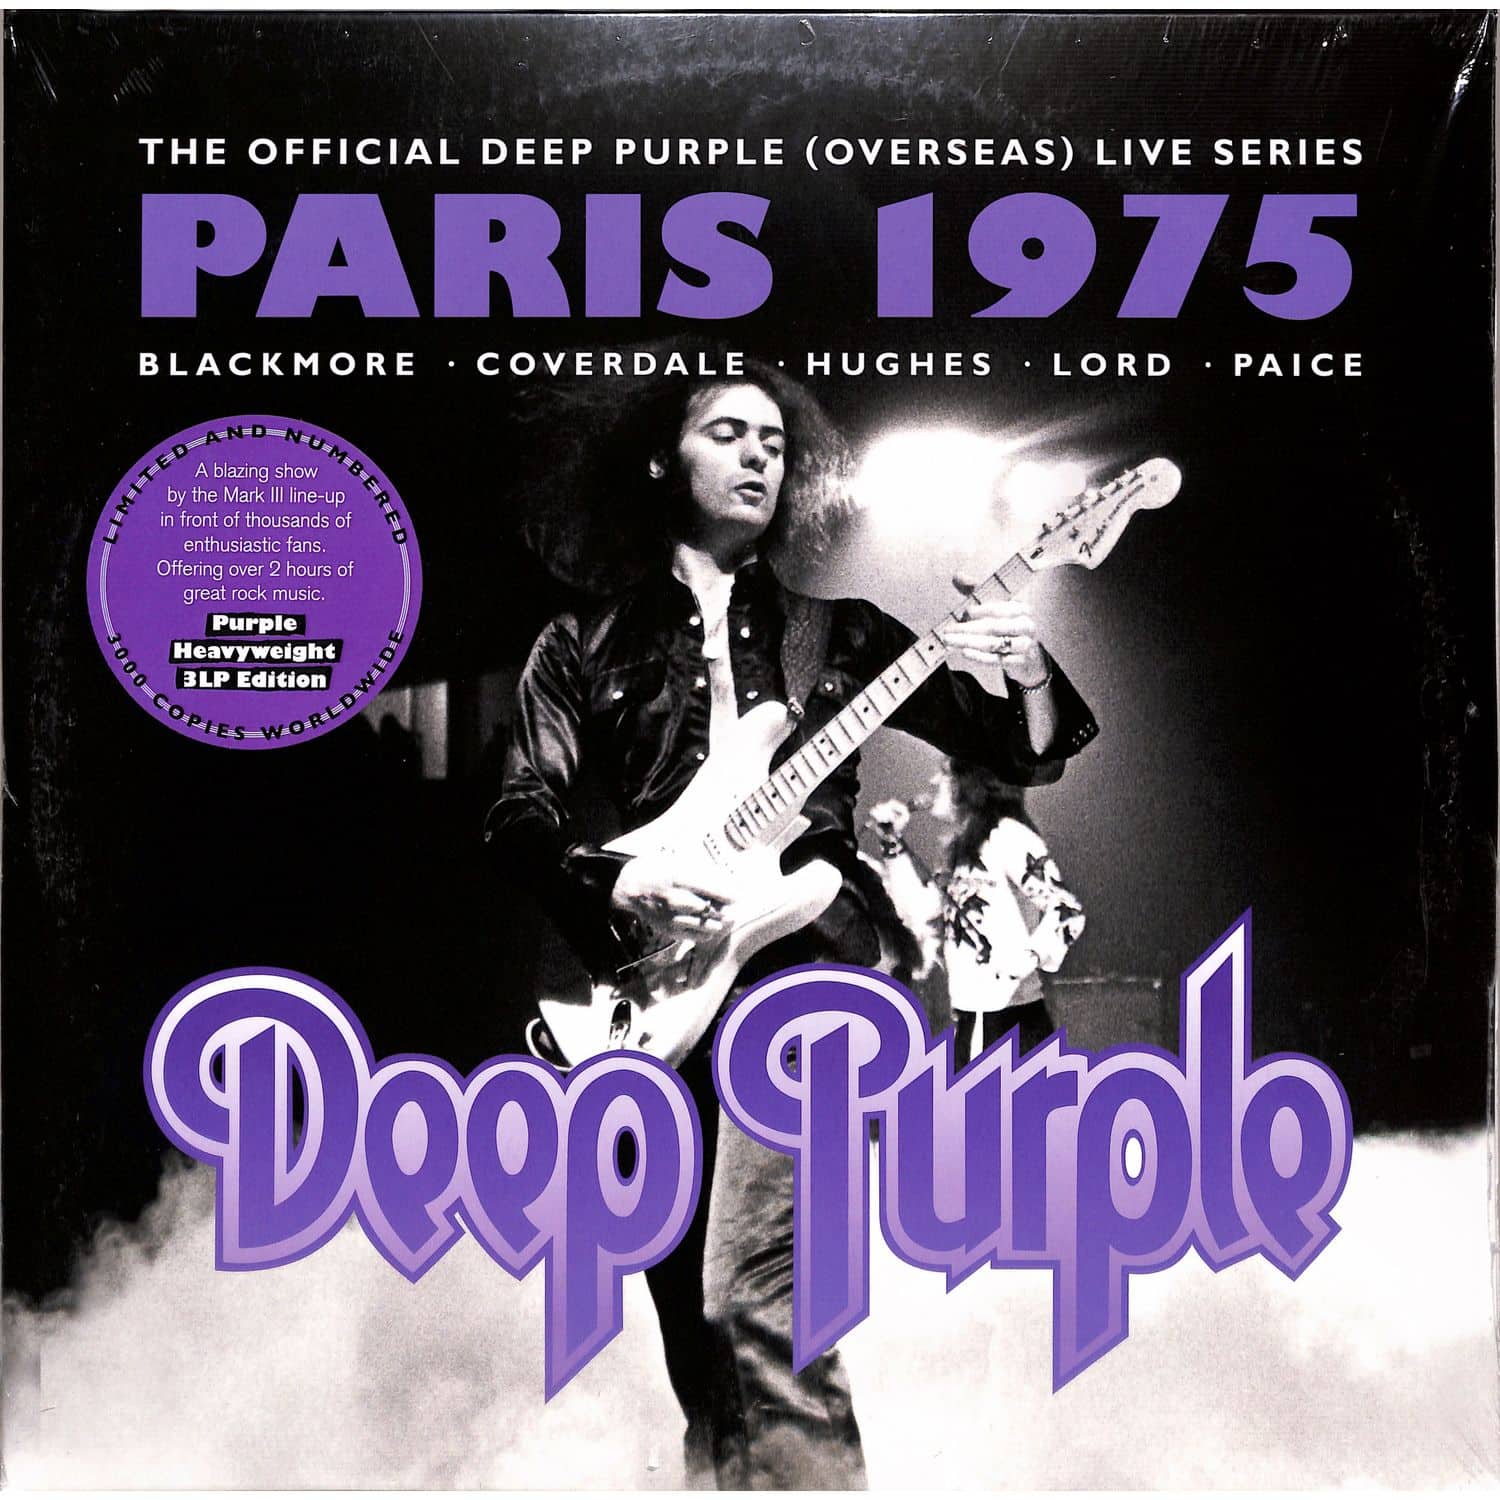 Deep Purple - PARIS 1975 